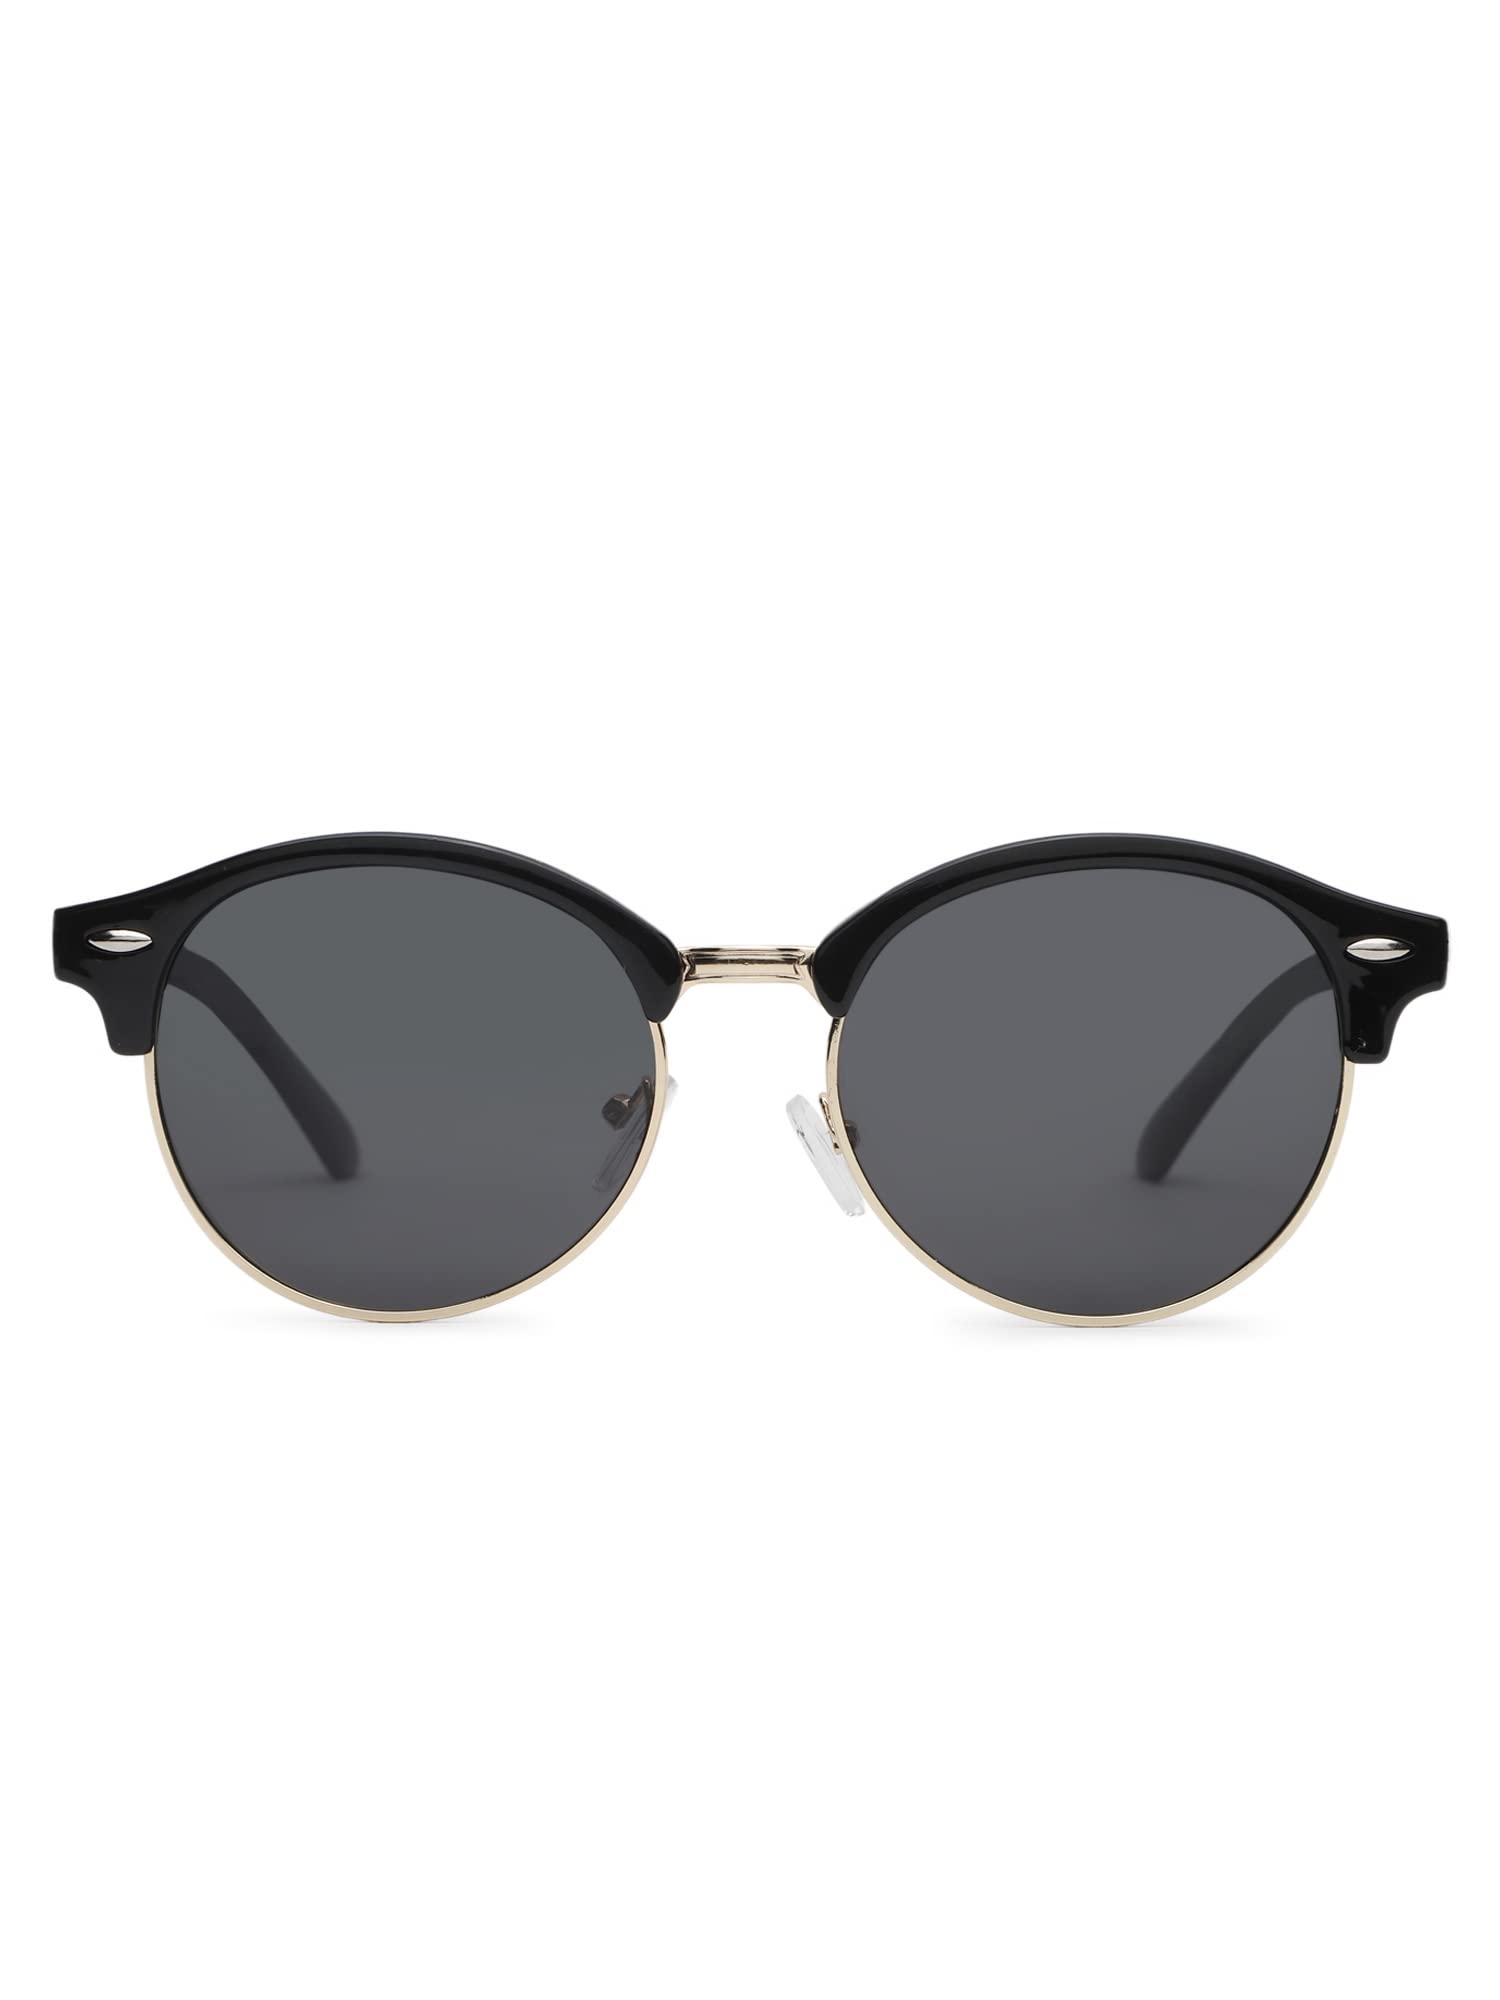 Intellilens Square UV Protected Sunglasses For Men & Women